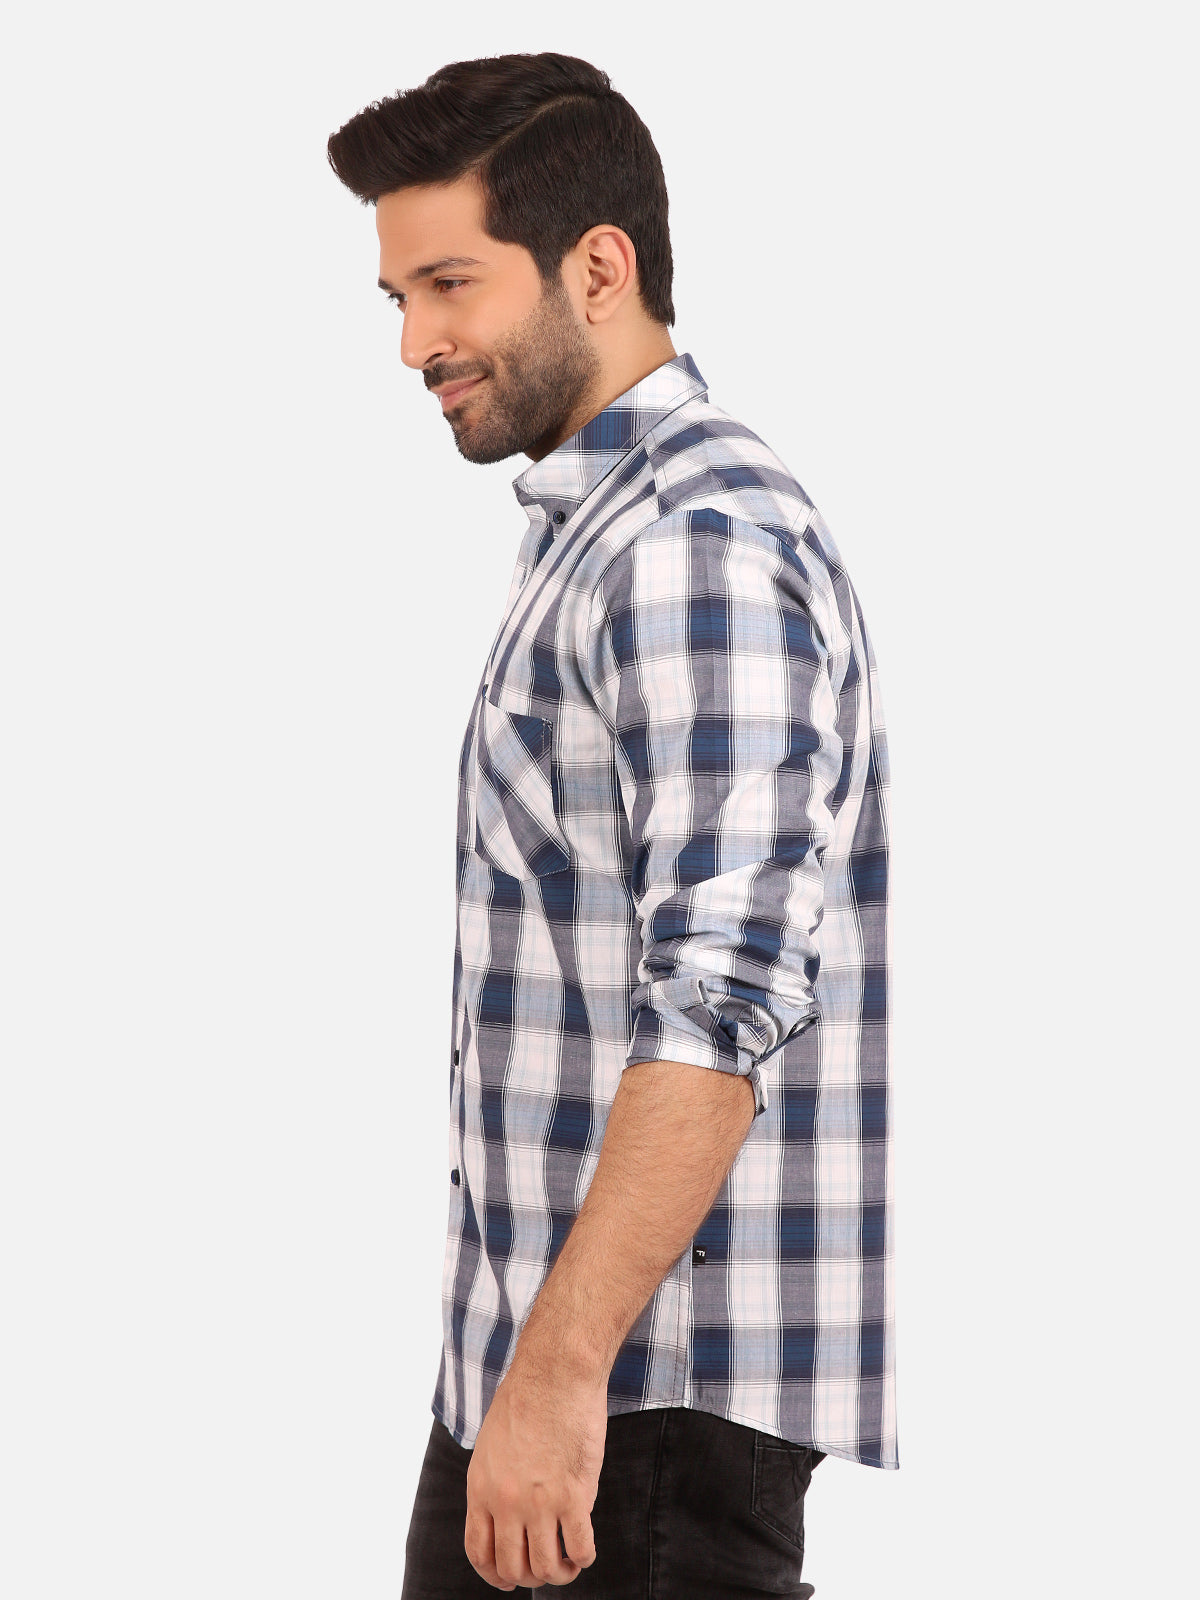 Men's Blue Casual Shirt - FMTS20-31388